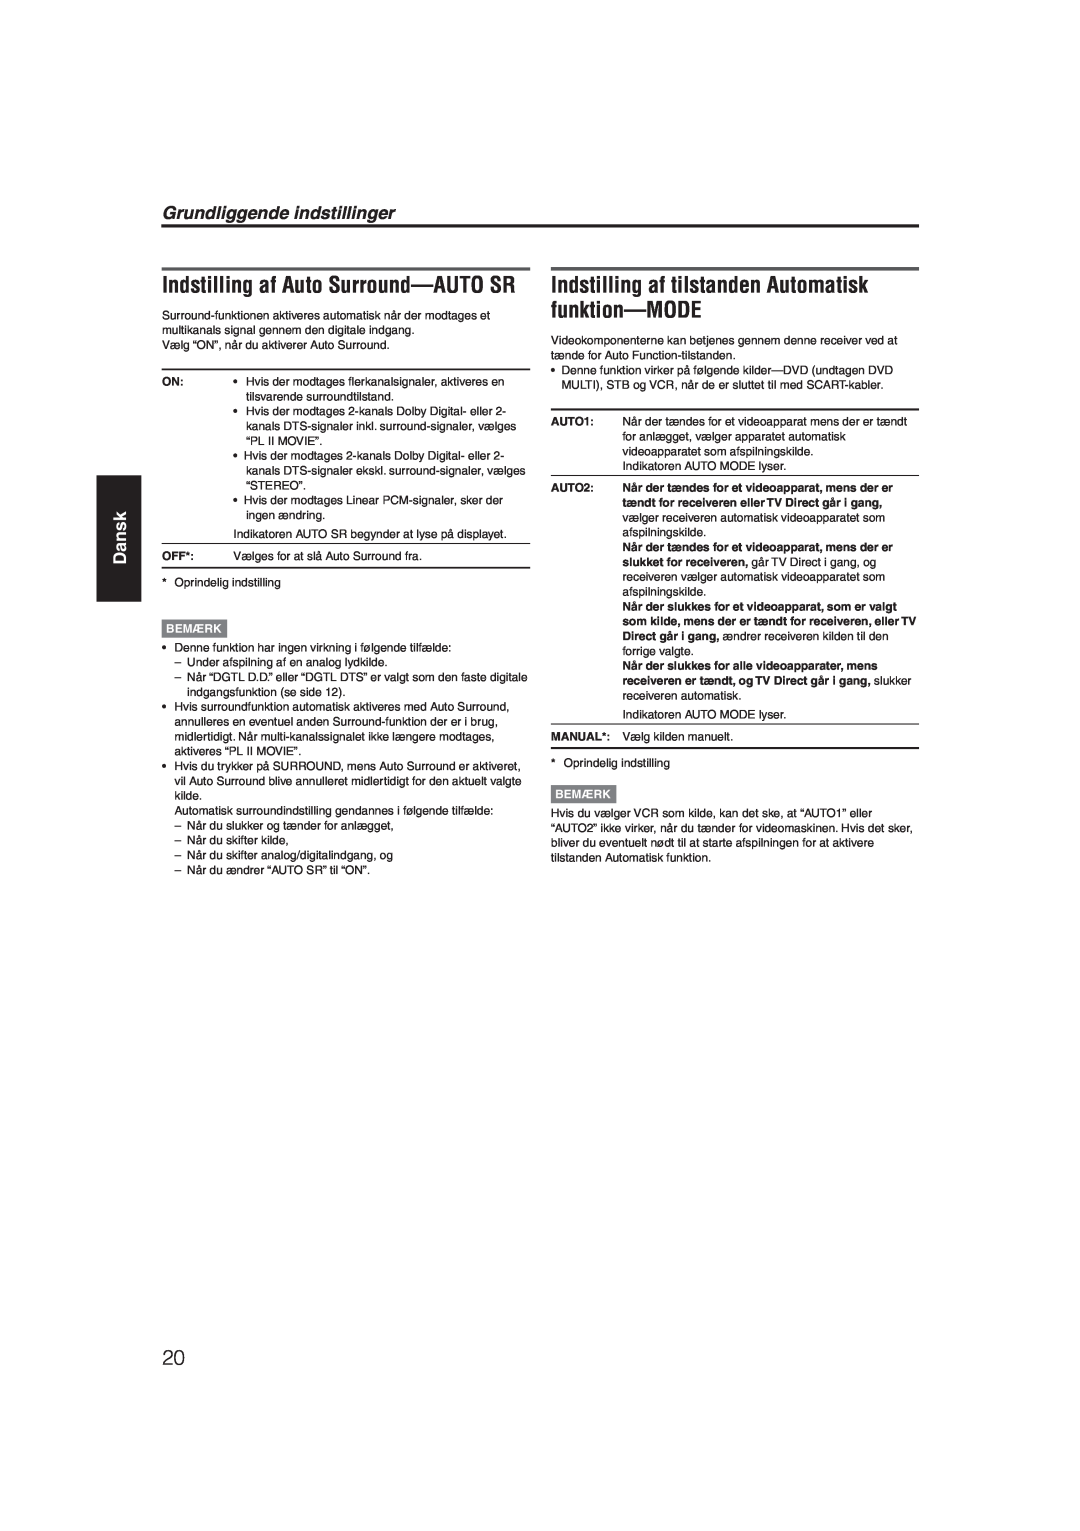 JVC RX-ES1SL manual Indstilling af Auto Surround-AUTOSR, Grundliggende indstillinger, Dansk, Bemærk, AUTO1, AUTO2, Manual 